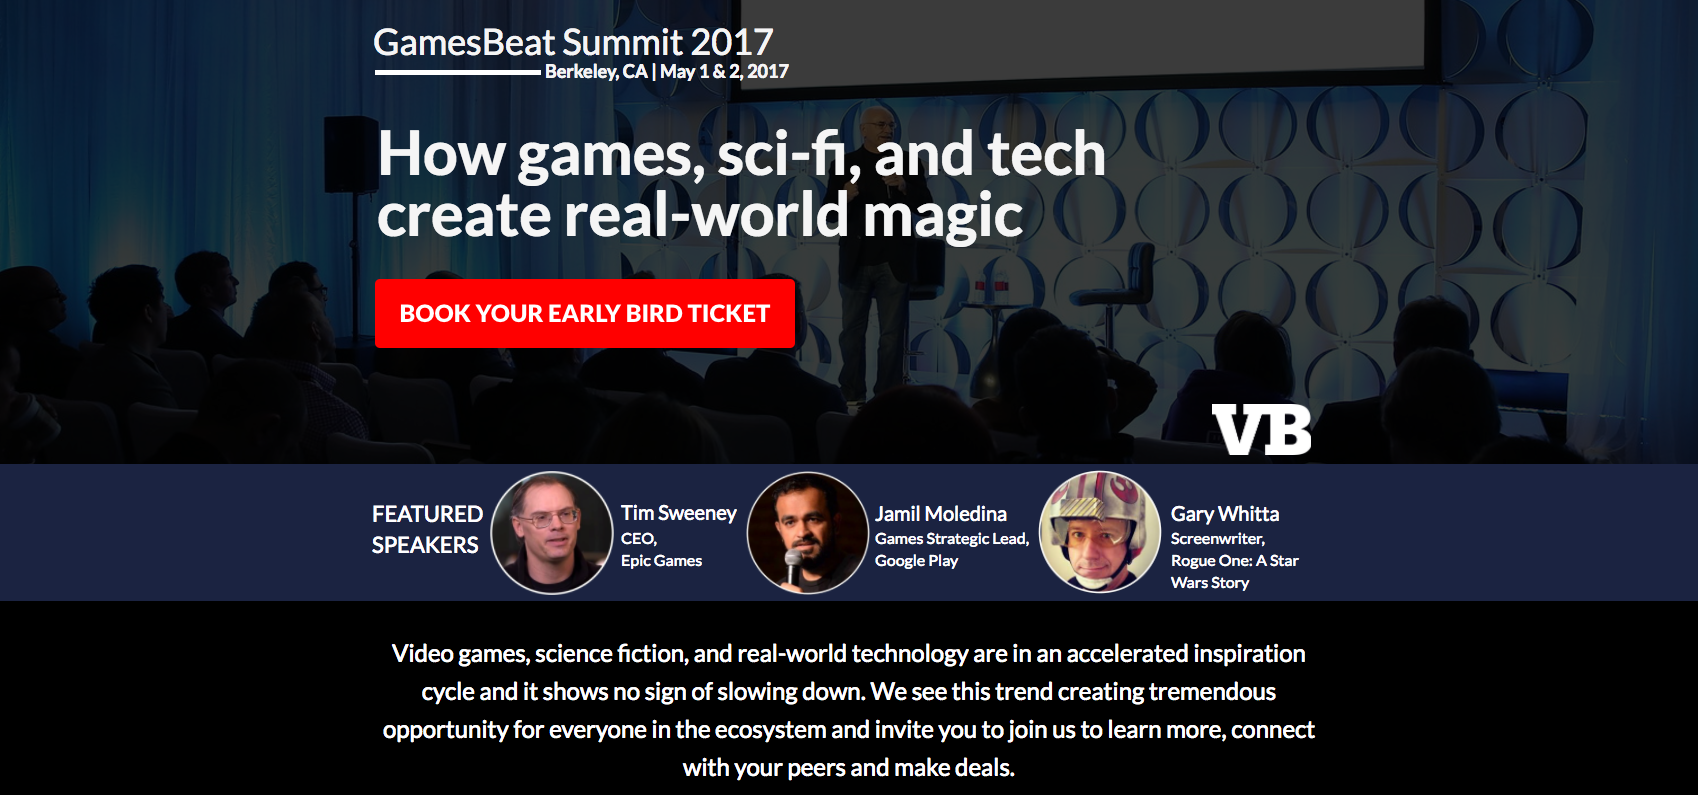 GamesBeat Summit 2017